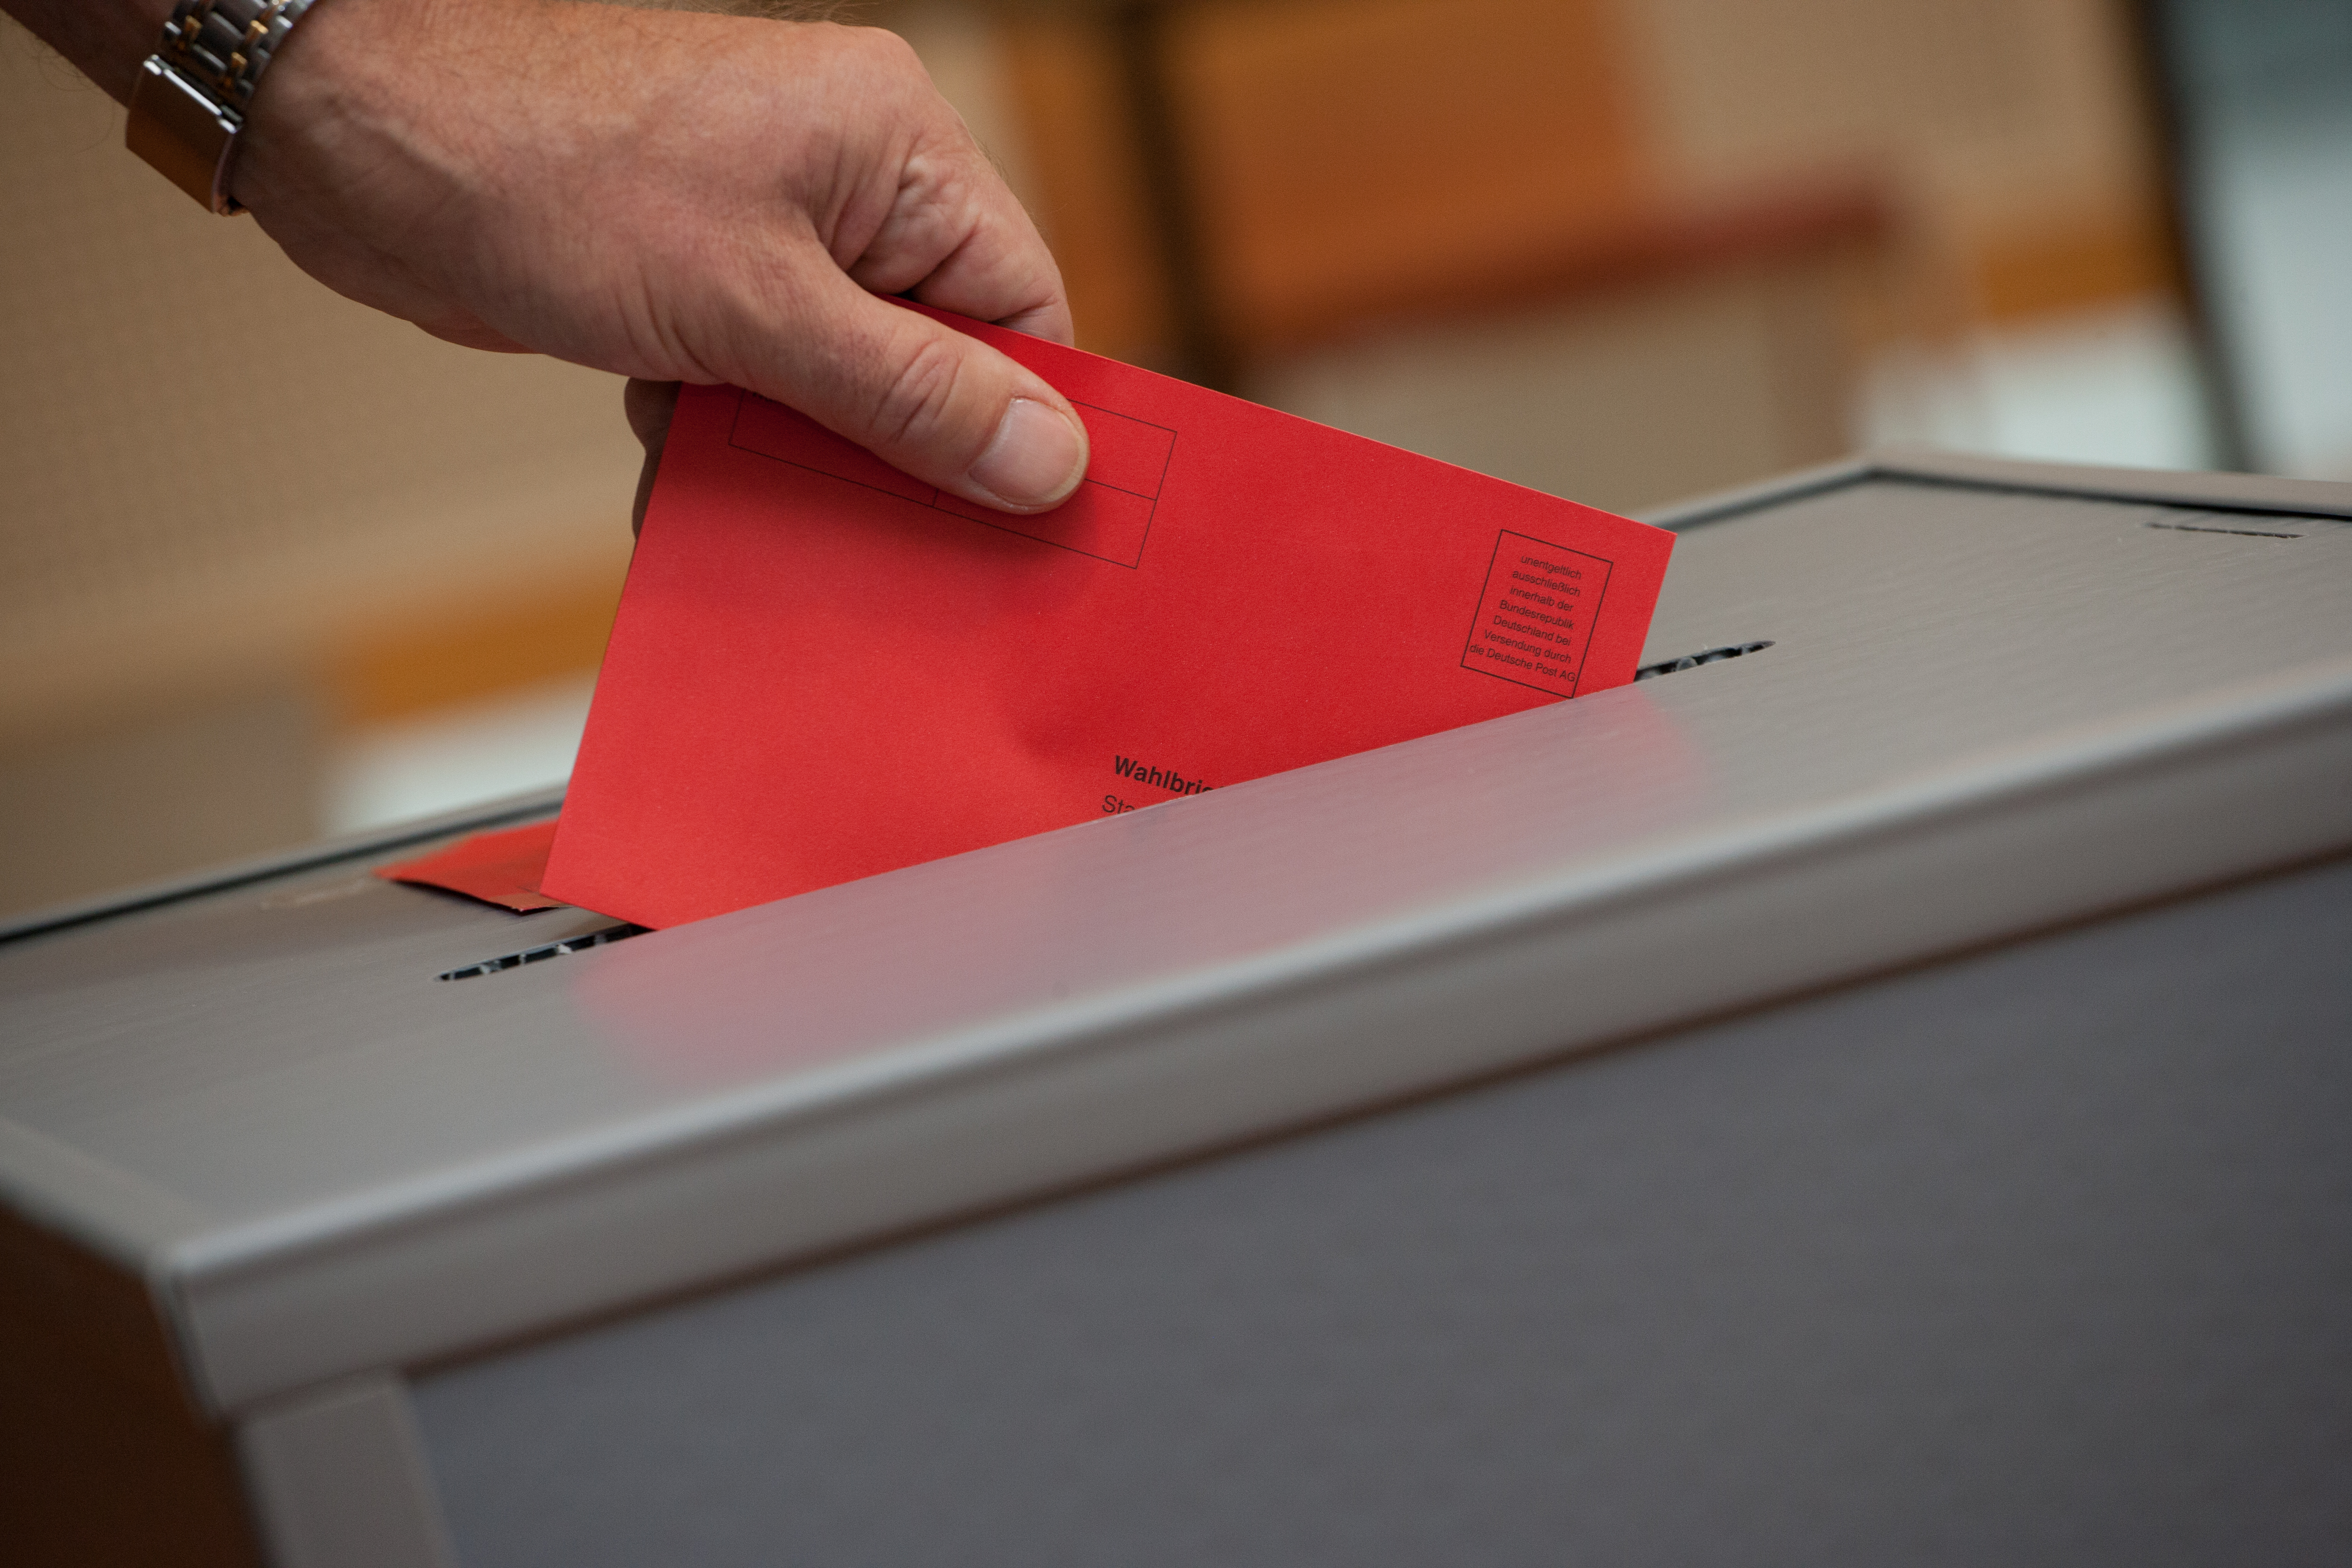 Eine Wahlurne, in der der Stimmzettel eingeworfen wird. Die Wahlurne ist grau, der Stimmwahlumschlag ist rot.